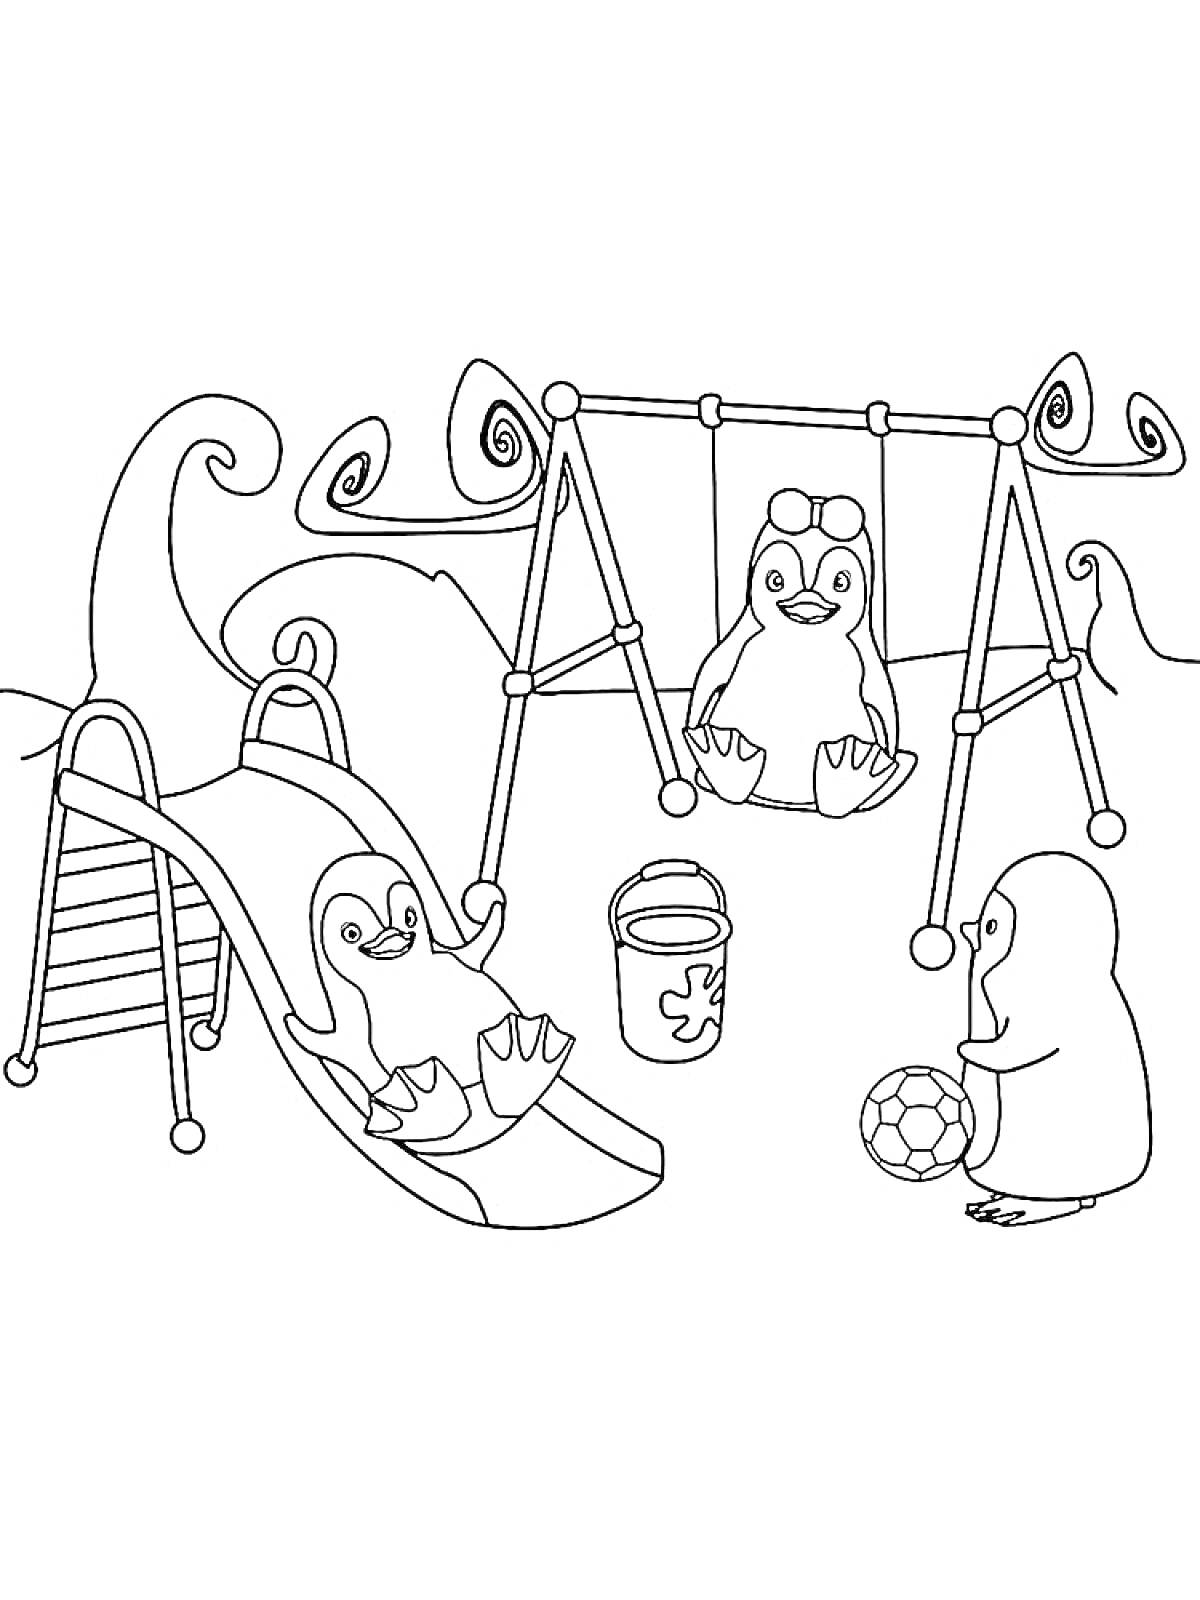 Раскраска Пингвины на детской площадке с горкой, качелями, ведерком для песка и мячом